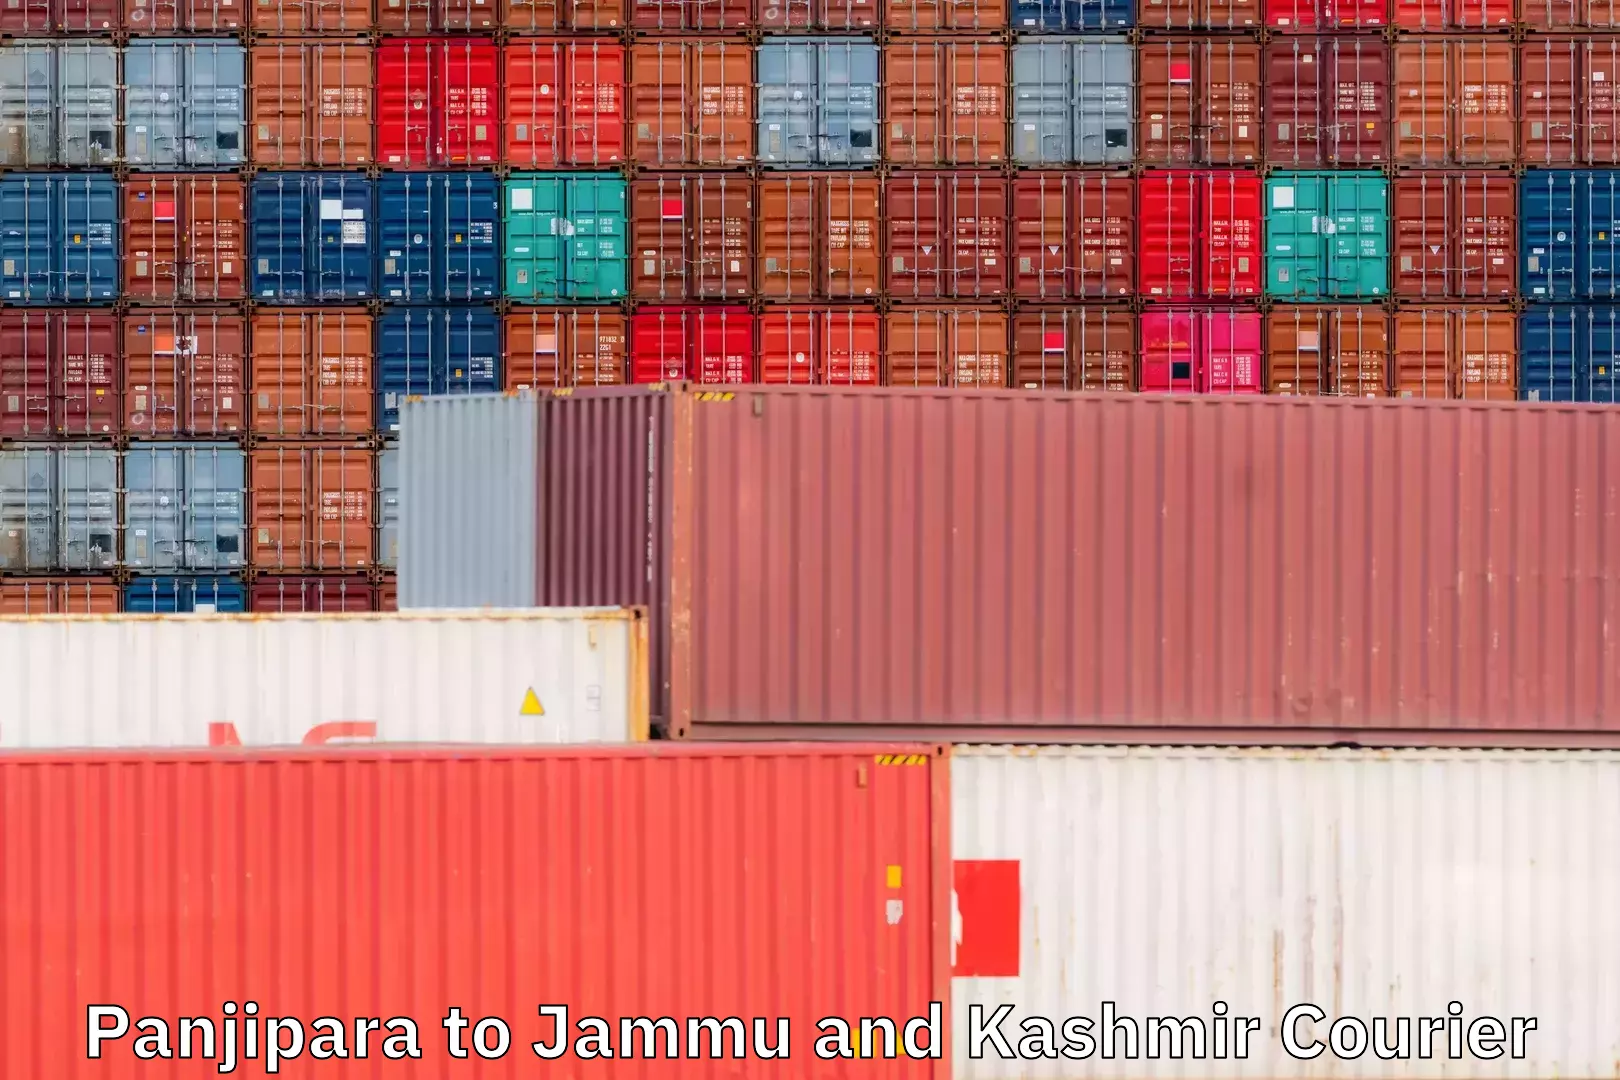 Courier service partnerships Panjipara to Jammu and Kashmir